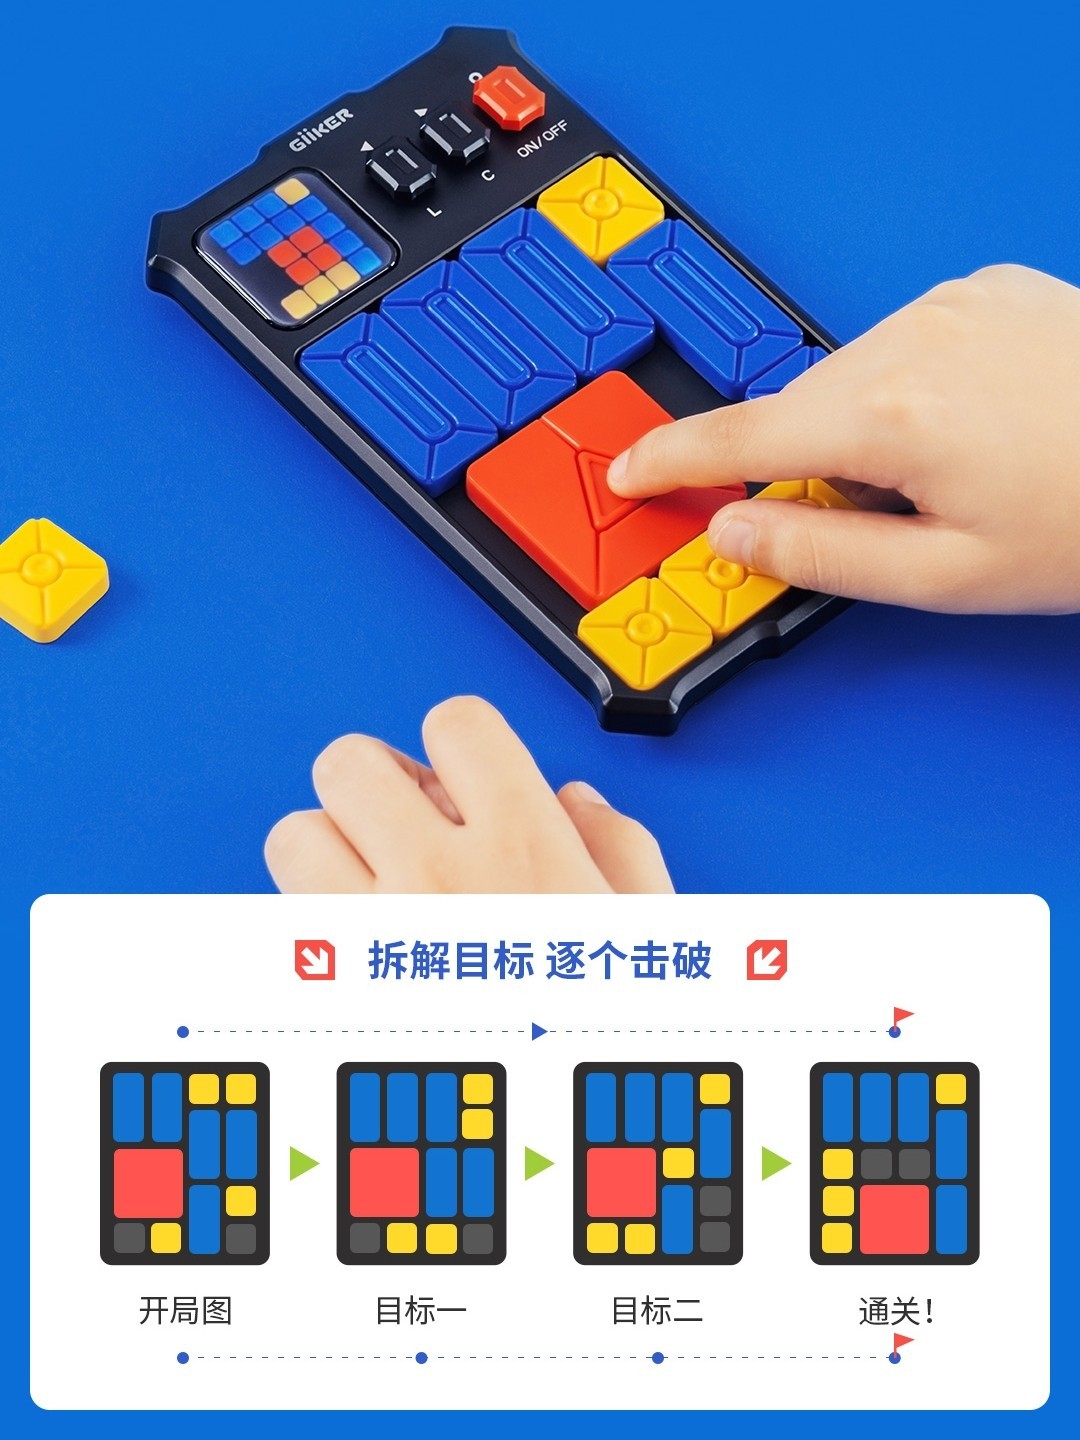 计客华容道滑动拼图 益智高级电子数字智能积木磁力玩具